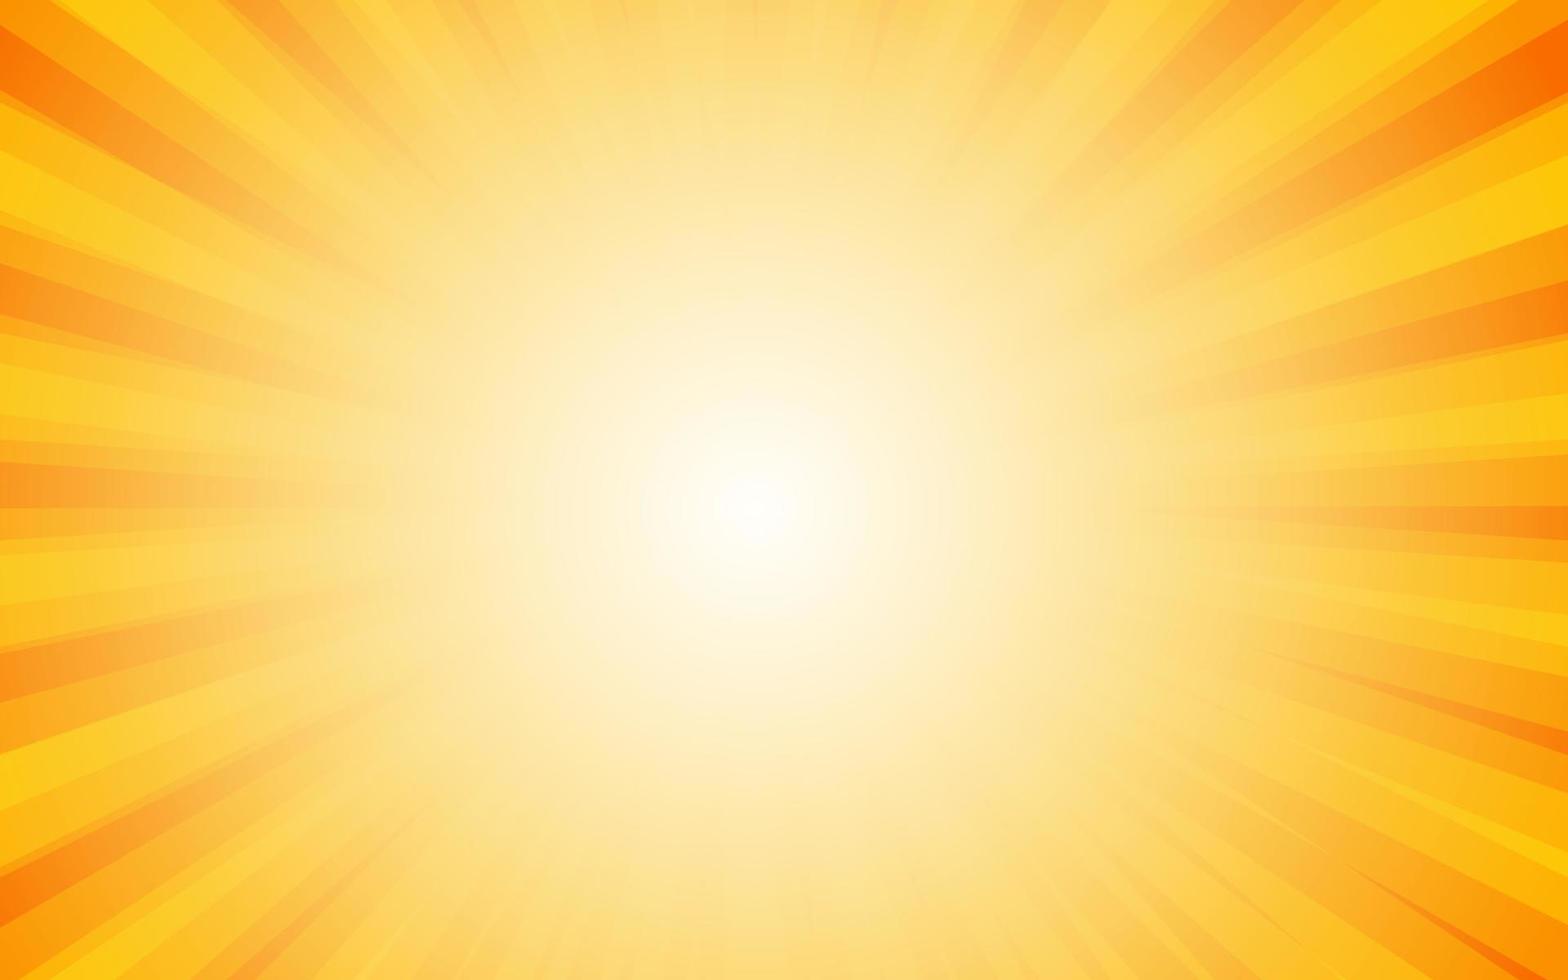 Sonnenstrahlen im Retro-Vintage-Stil auf gelbem Hintergrund, Sunburst-Musterhintergrund. Strahlen. Sommer-Banner-Vektor-Illustration vektor